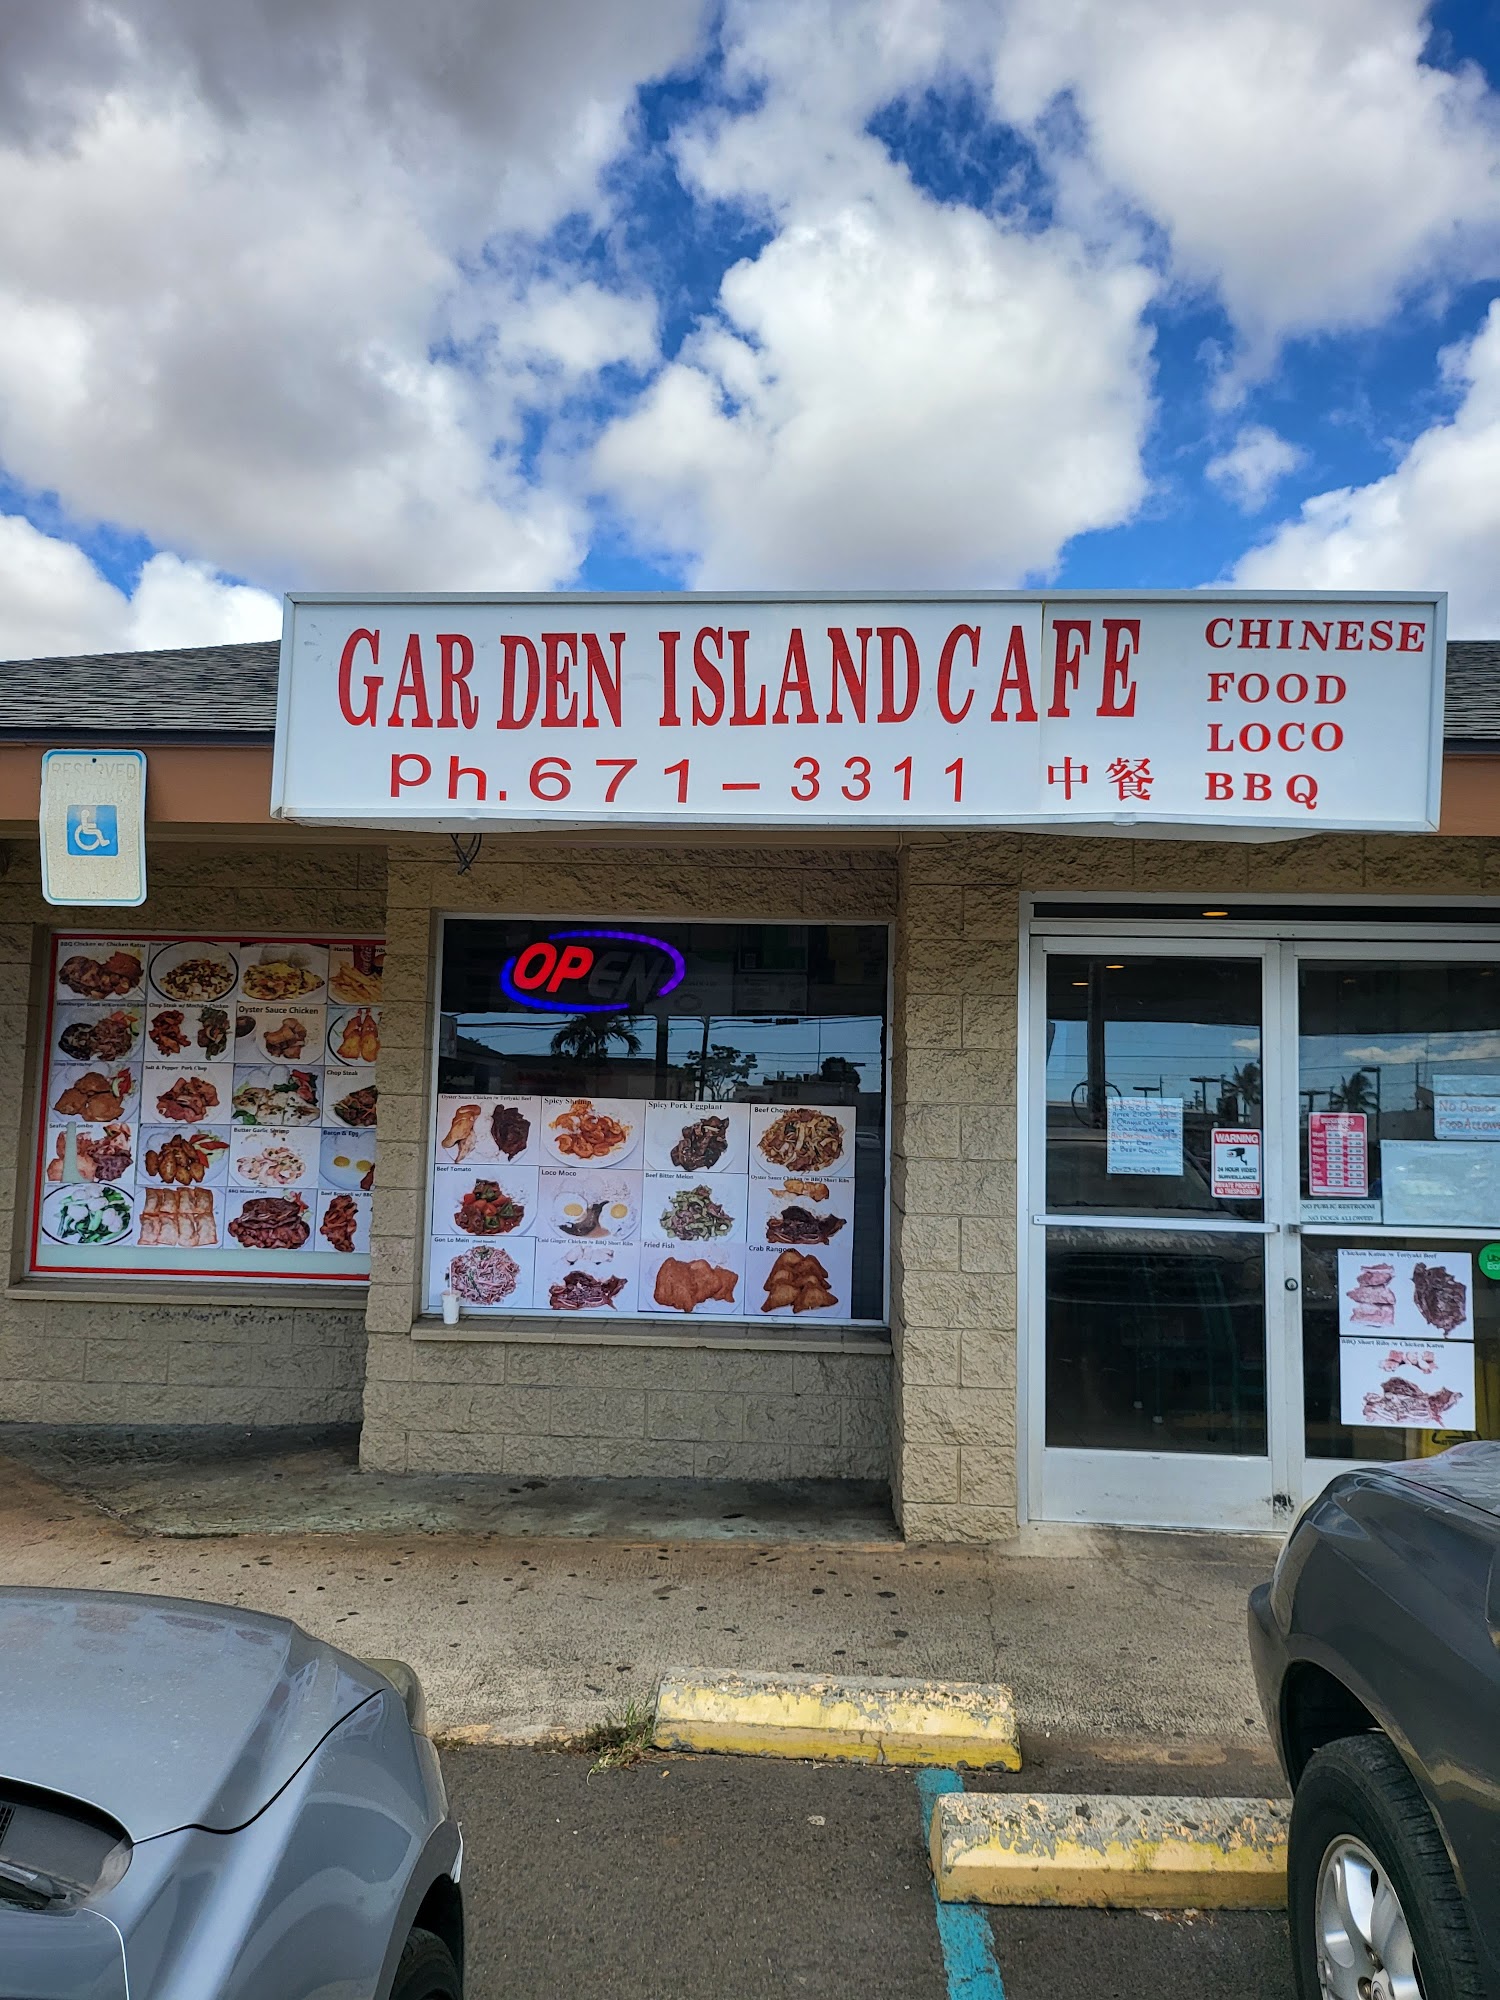 Garden Island Cafe